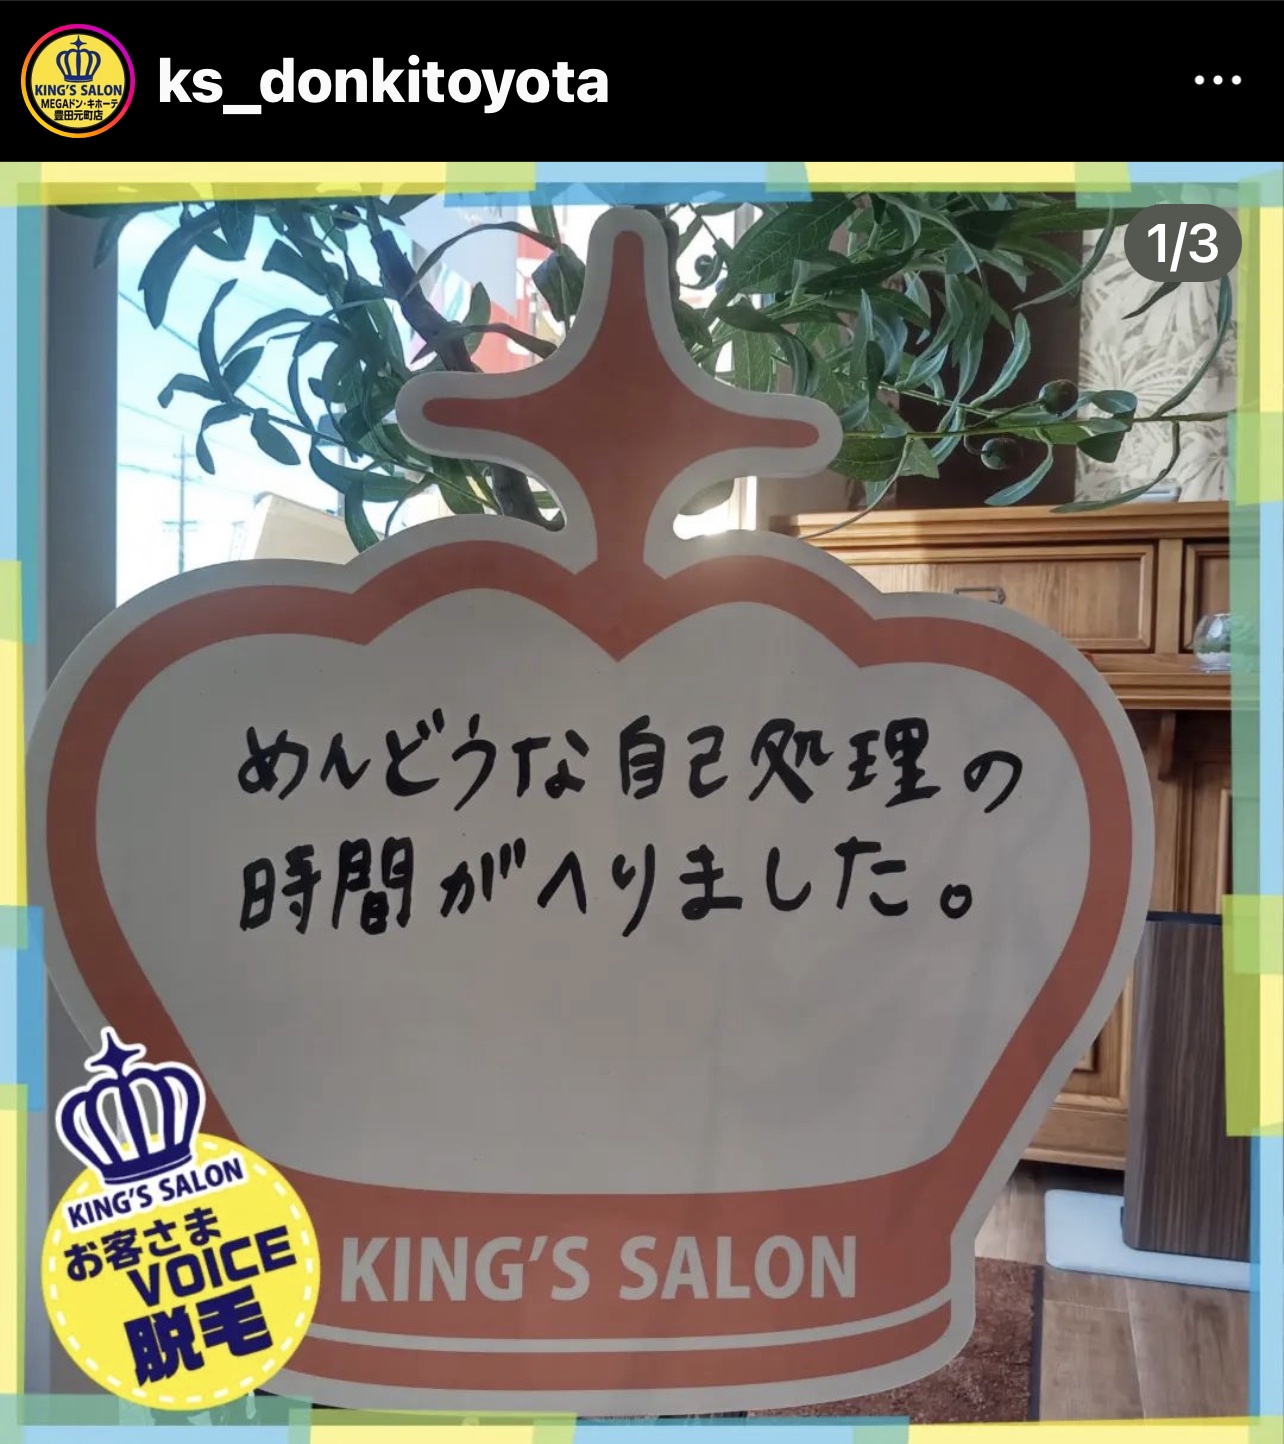 キングスサロンMEGAドン・キホーテ豊田元町店 お客様の声 サムネイル画像